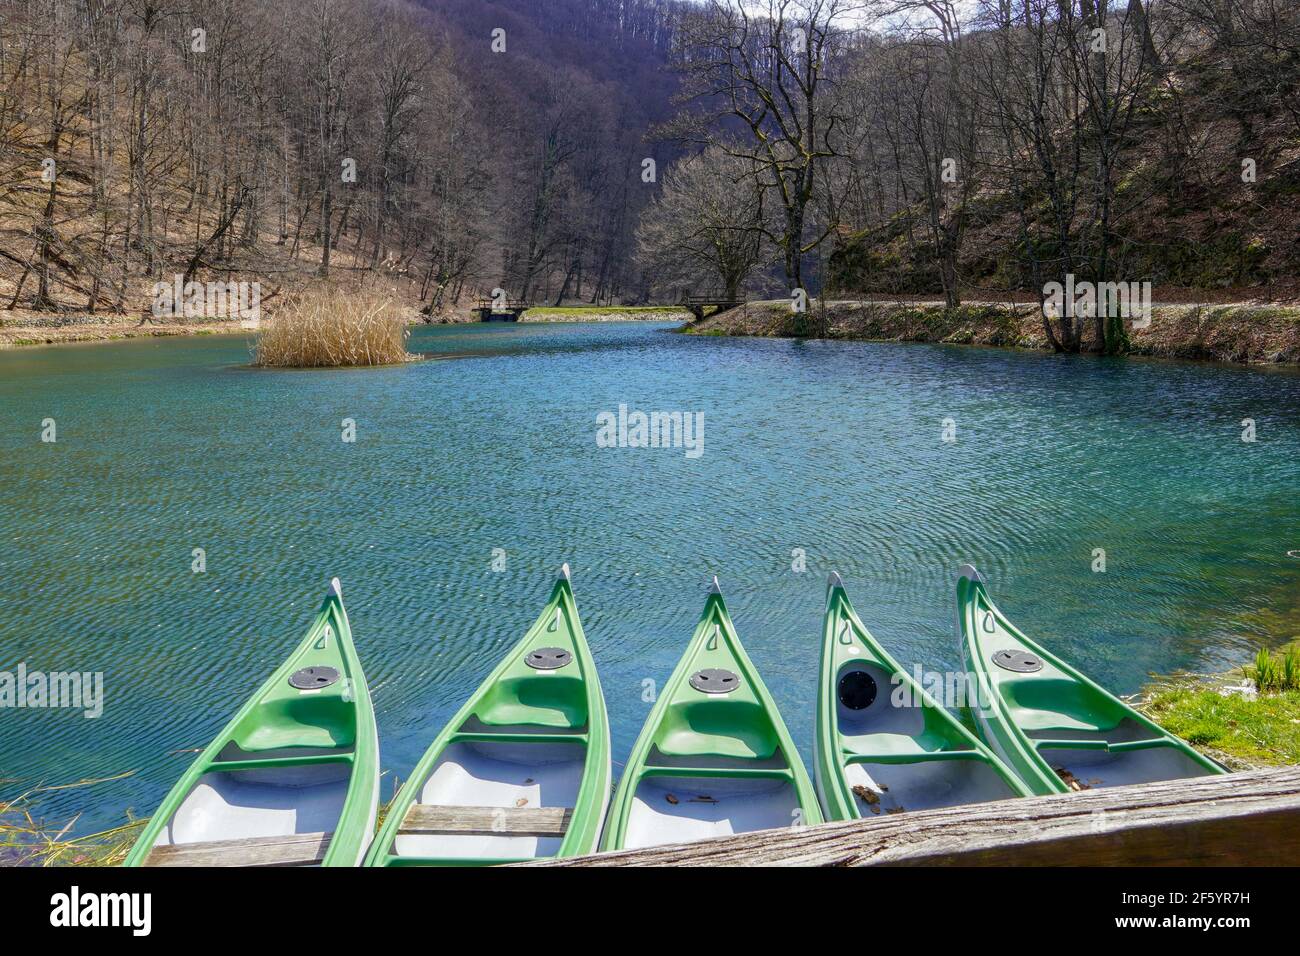 Cinq bateaux à rames sur le lac surplombent le lac vert idyllique. Banque D'Images